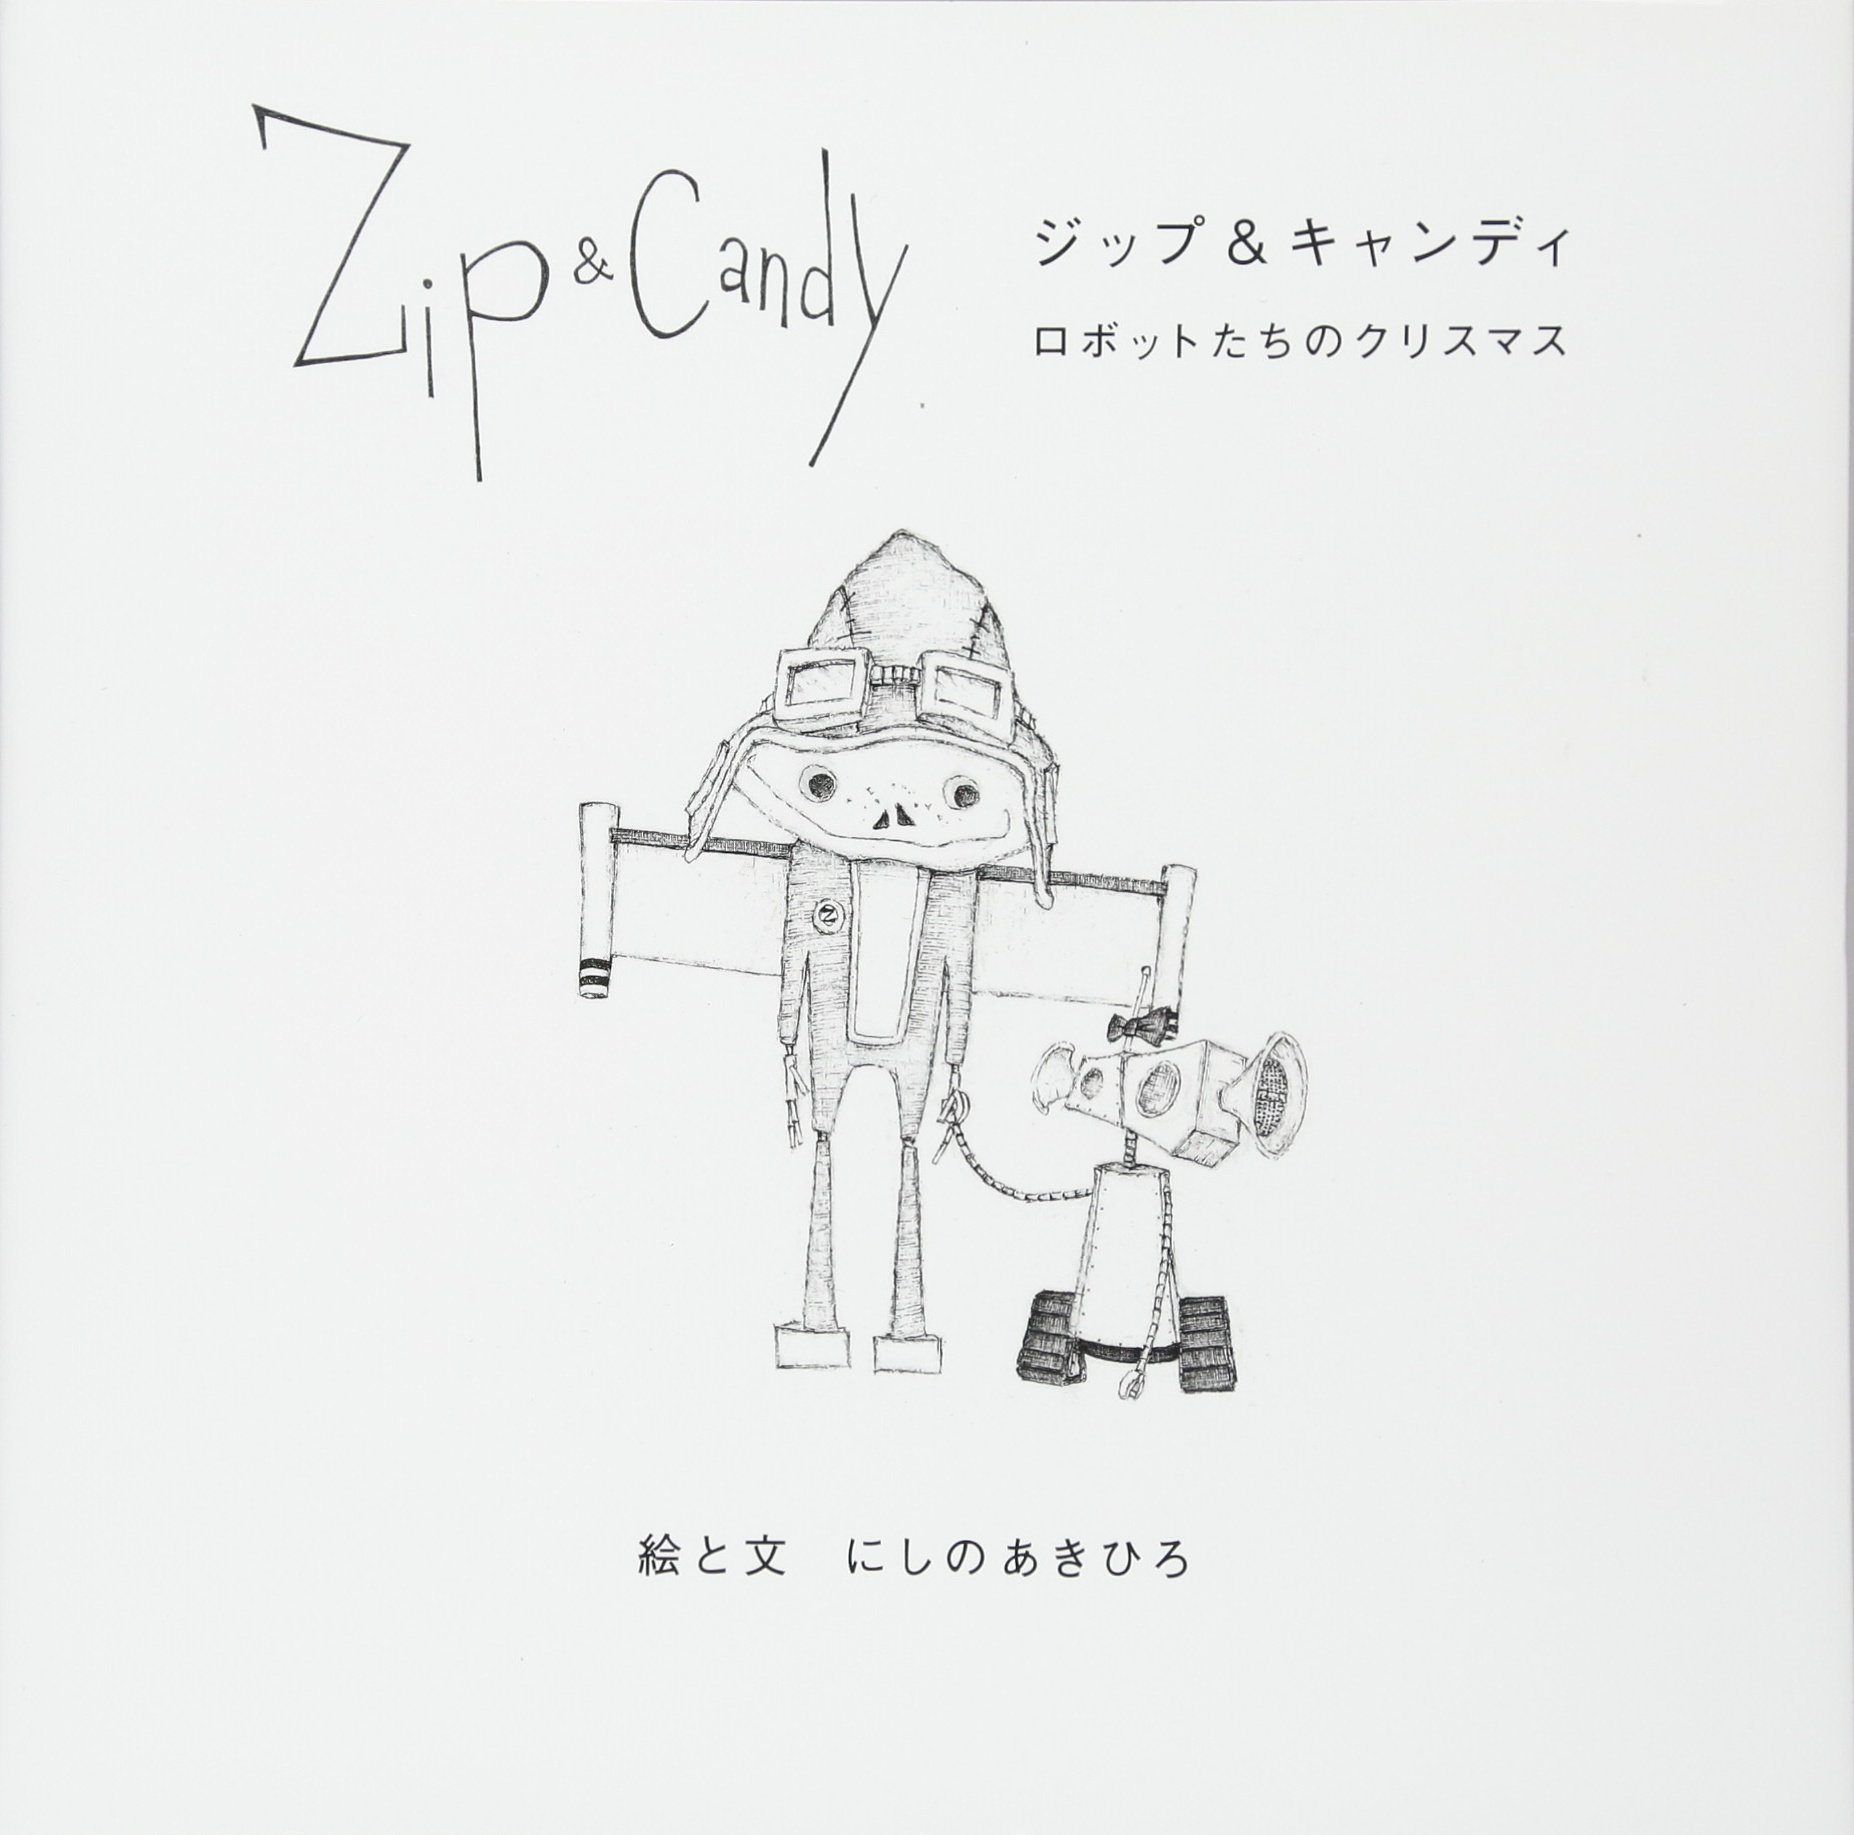 にしのあきひろ原作の音楽劇「Zip&Candy」、キャスト一新で再演決定 イメージ画像